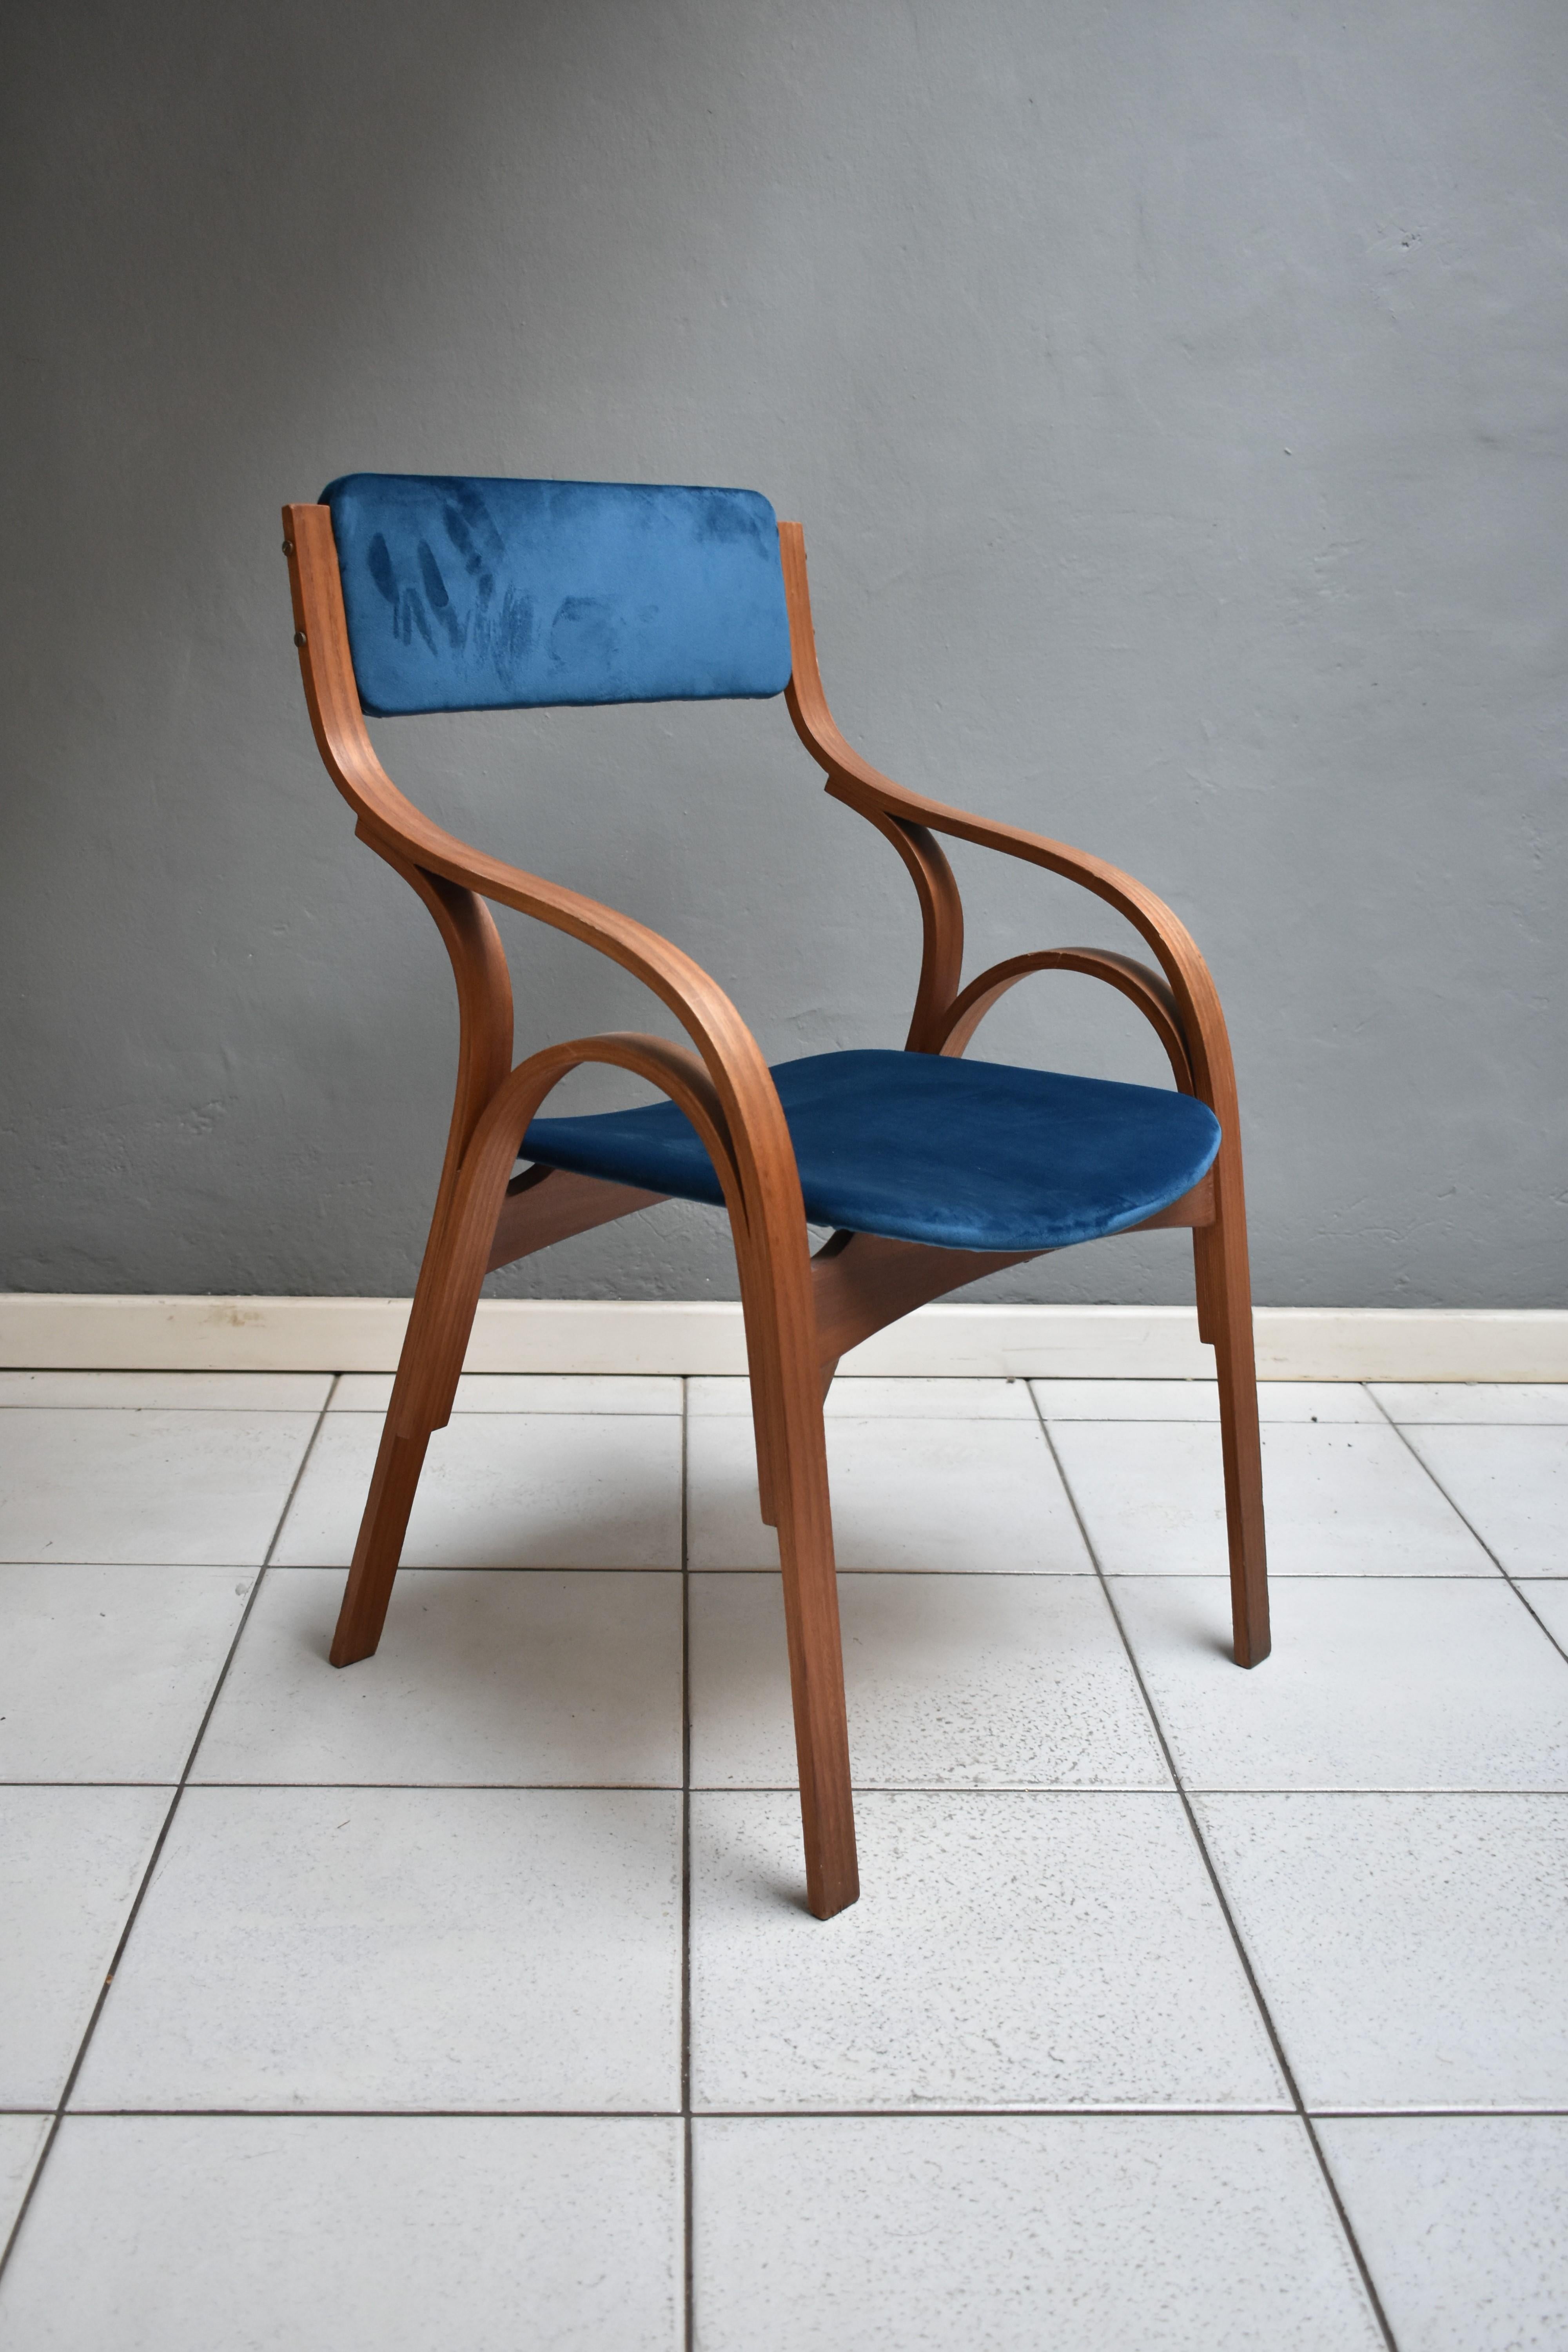 Mid-Century Modern, Sessel-Stuhl Entwurf von Giotto Stoppino, Lodovico Meneghetti Vittorio Gregotti für Sim
Italienische Herstellung aus den 1960er Jahren
Sessel mit Holzgestell, Sitz und Rückenlehne aus petrolblauem Samt.
Sehr guter Zustand.